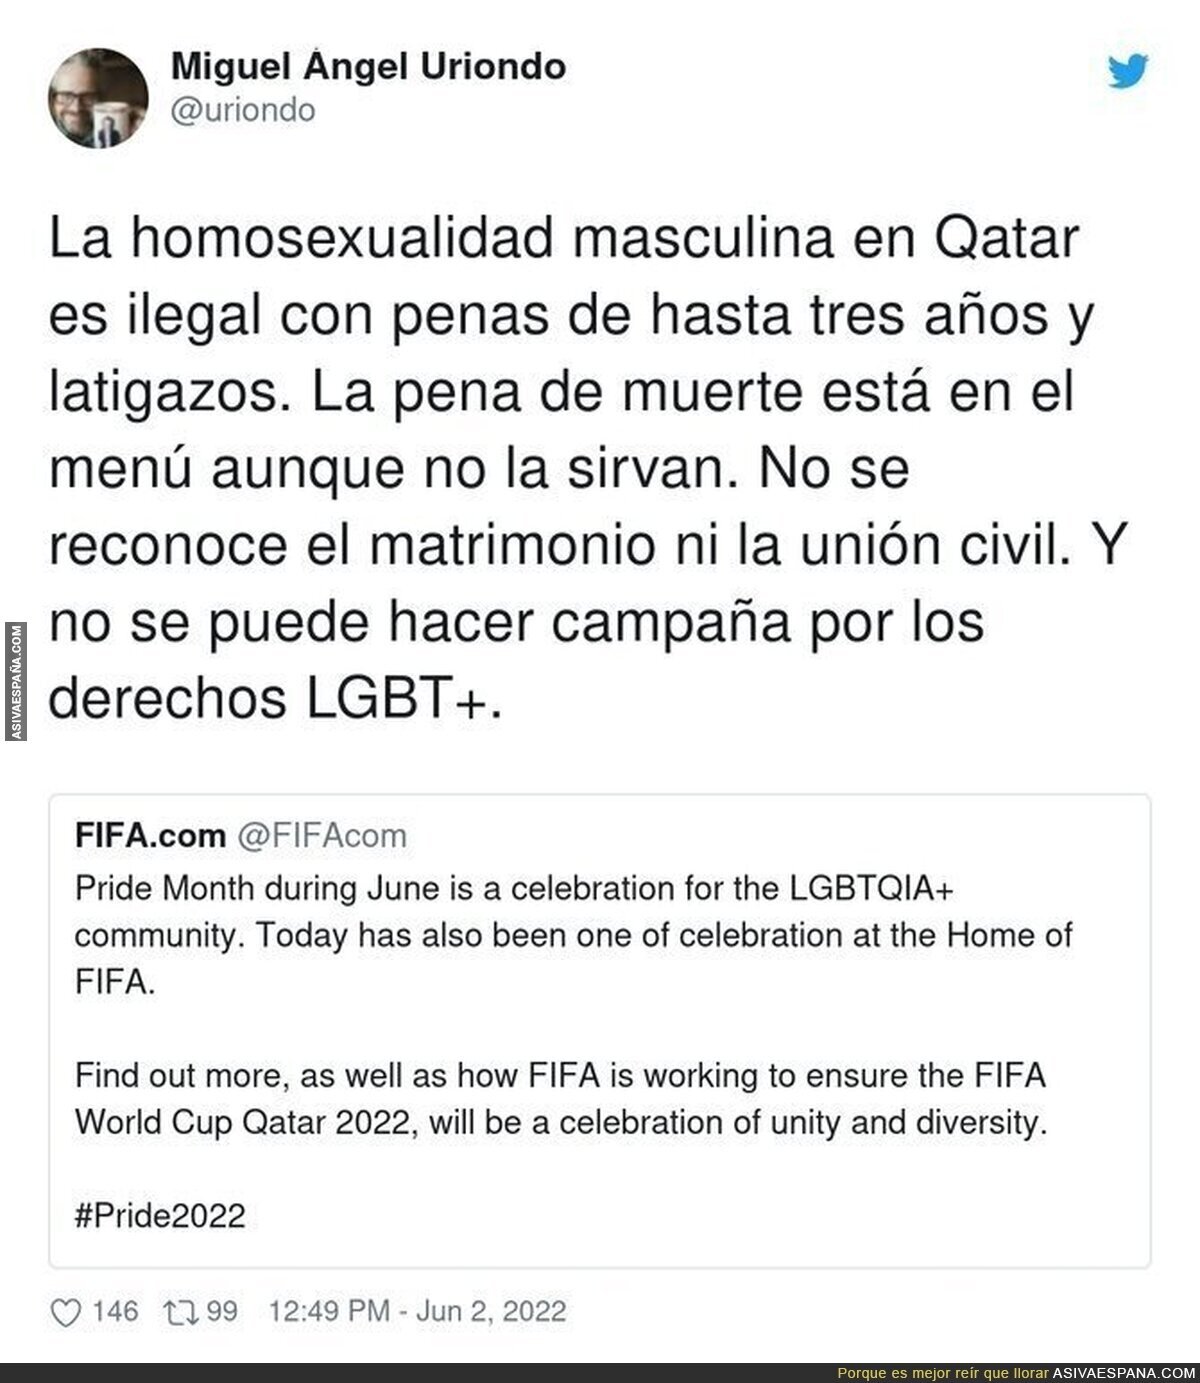 La FIFA y sus cosas...